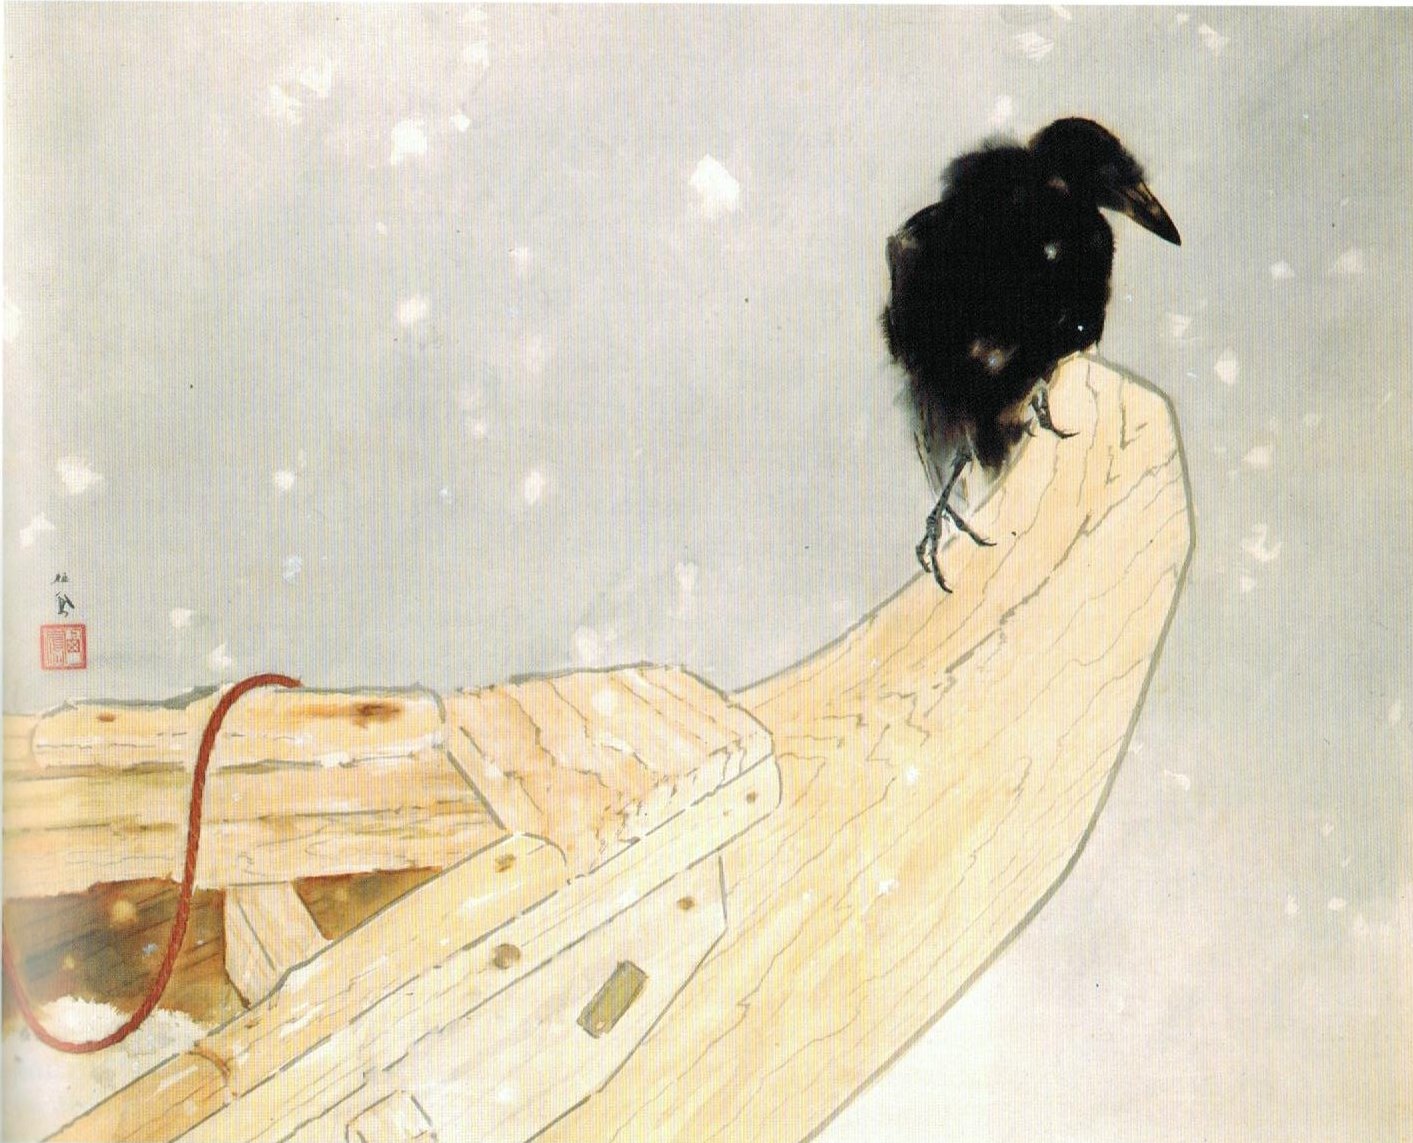 Jarní sníh (Shunsetsu) by Takeuchi Seihō - 1942 - 74,3 x 90,9 cm 